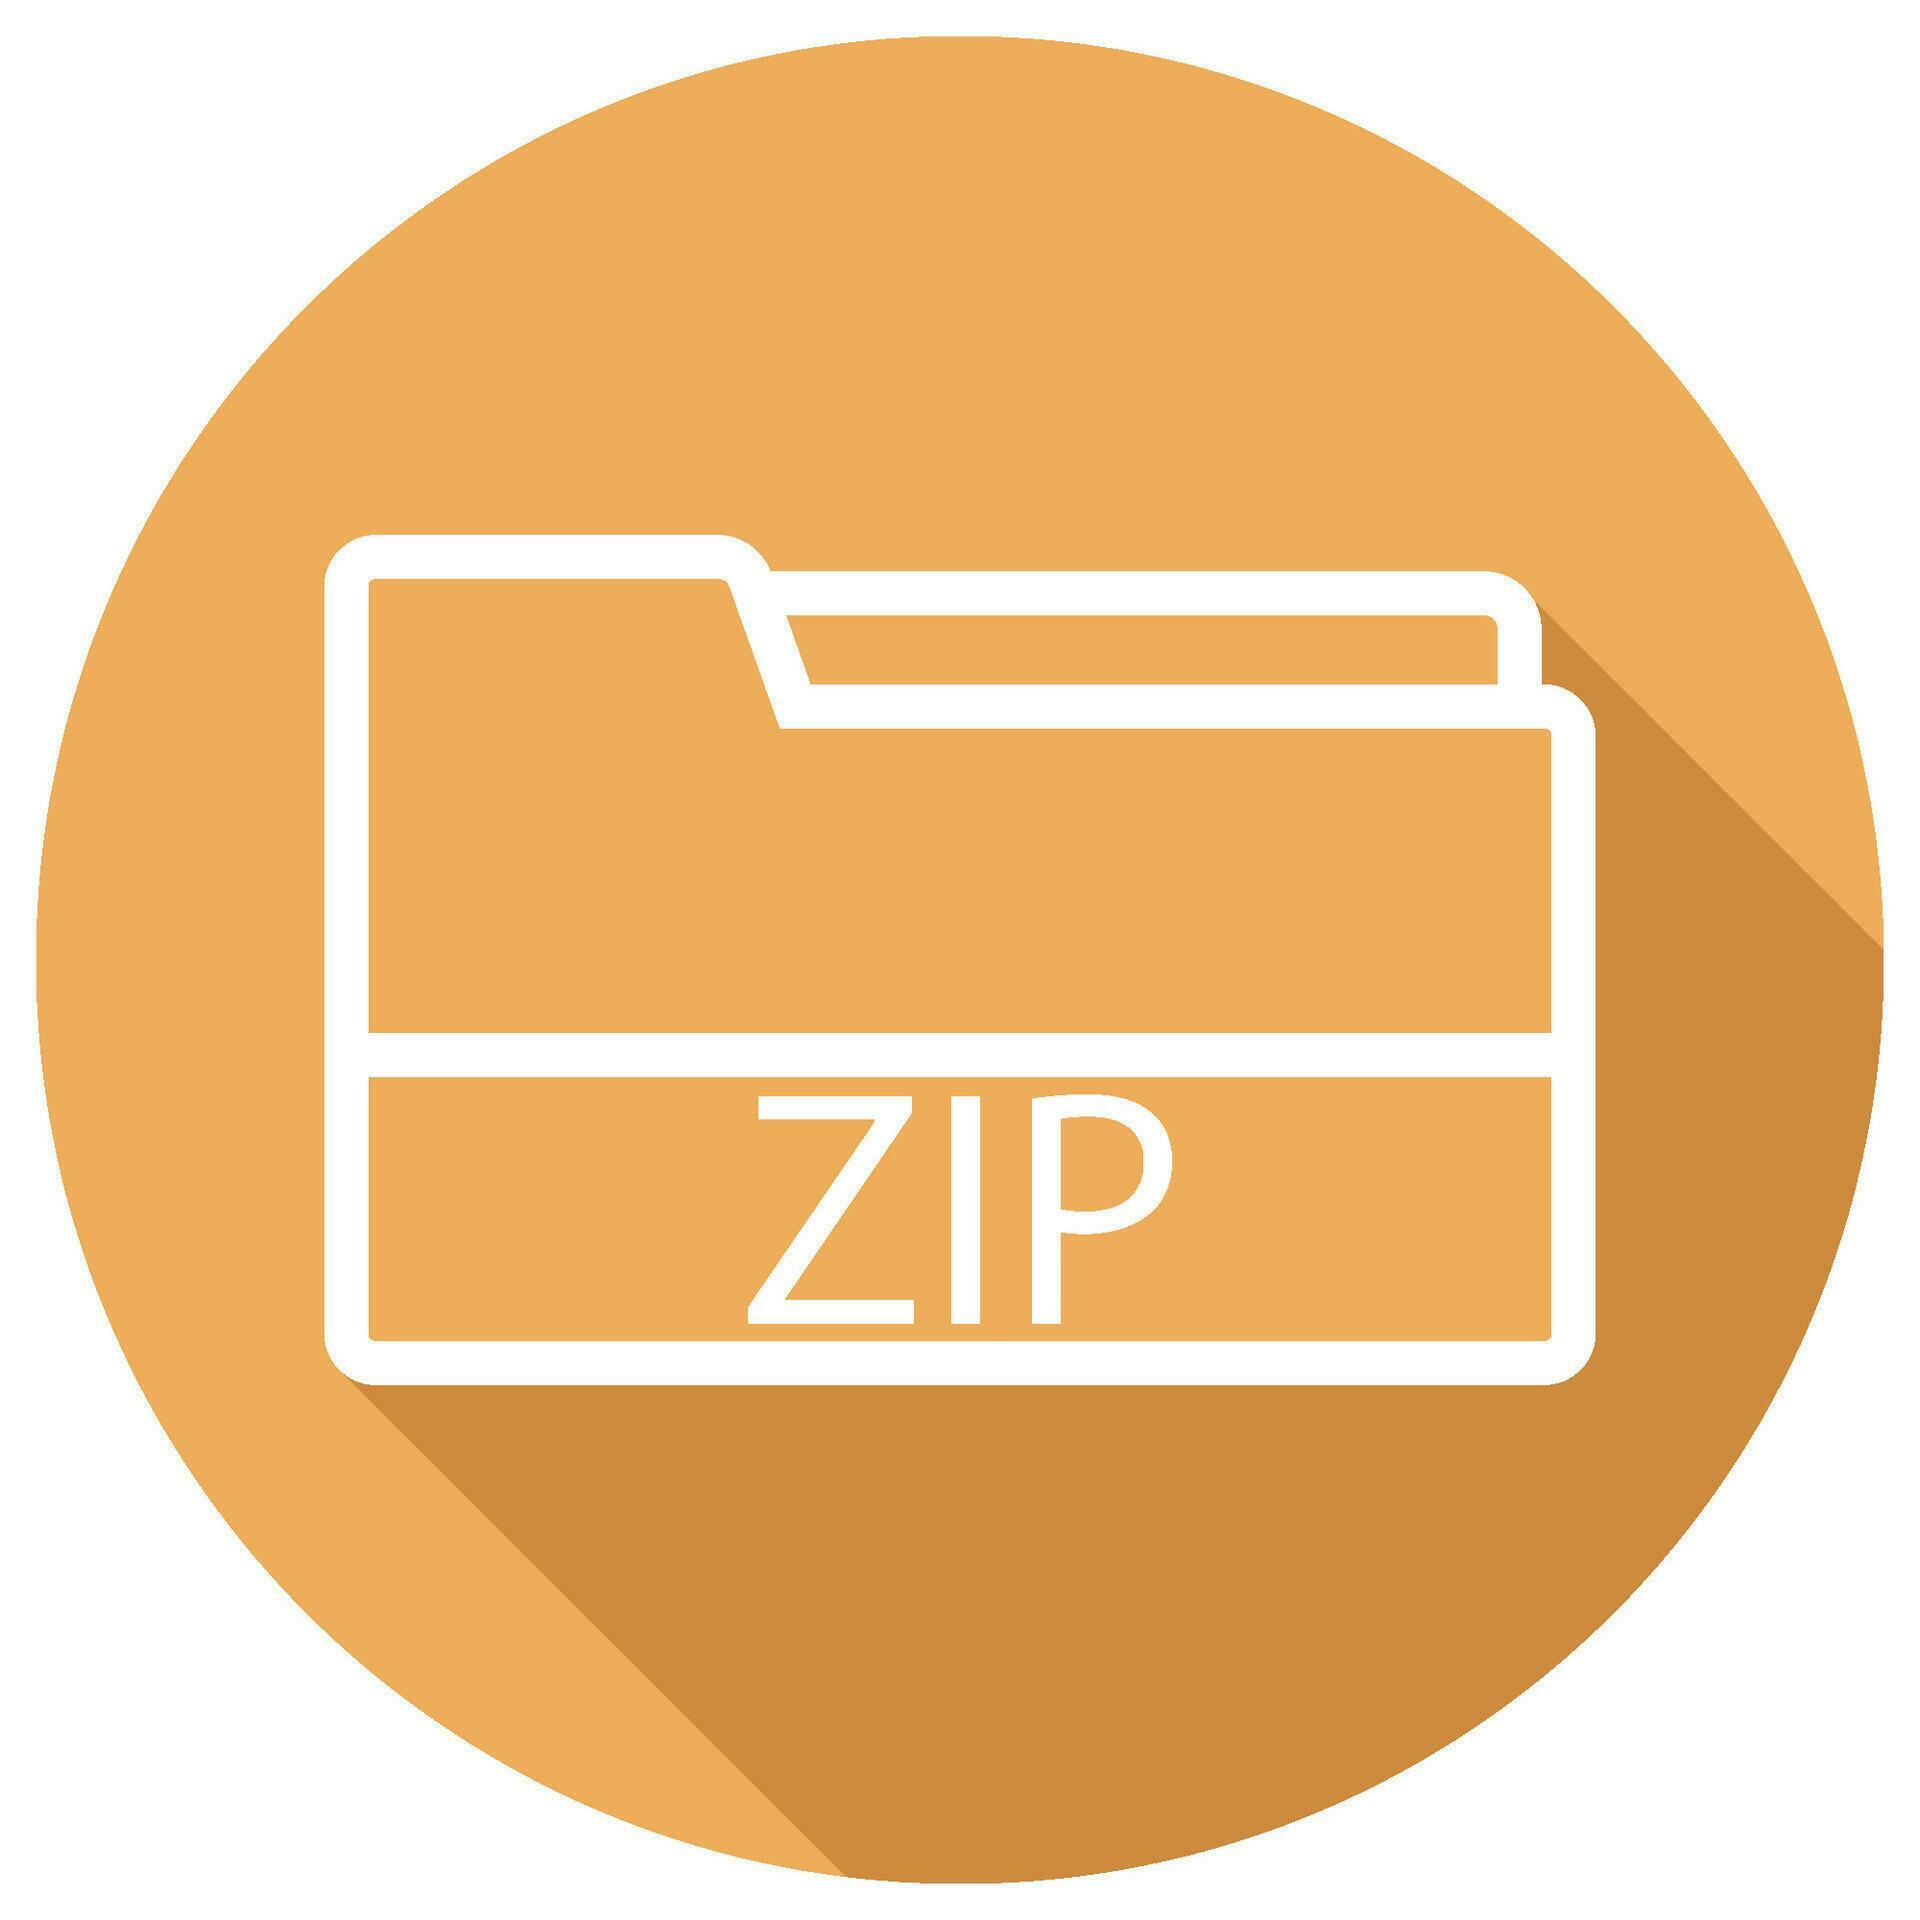 zip file icon vector 26264724 Vector Art at Vecteezy